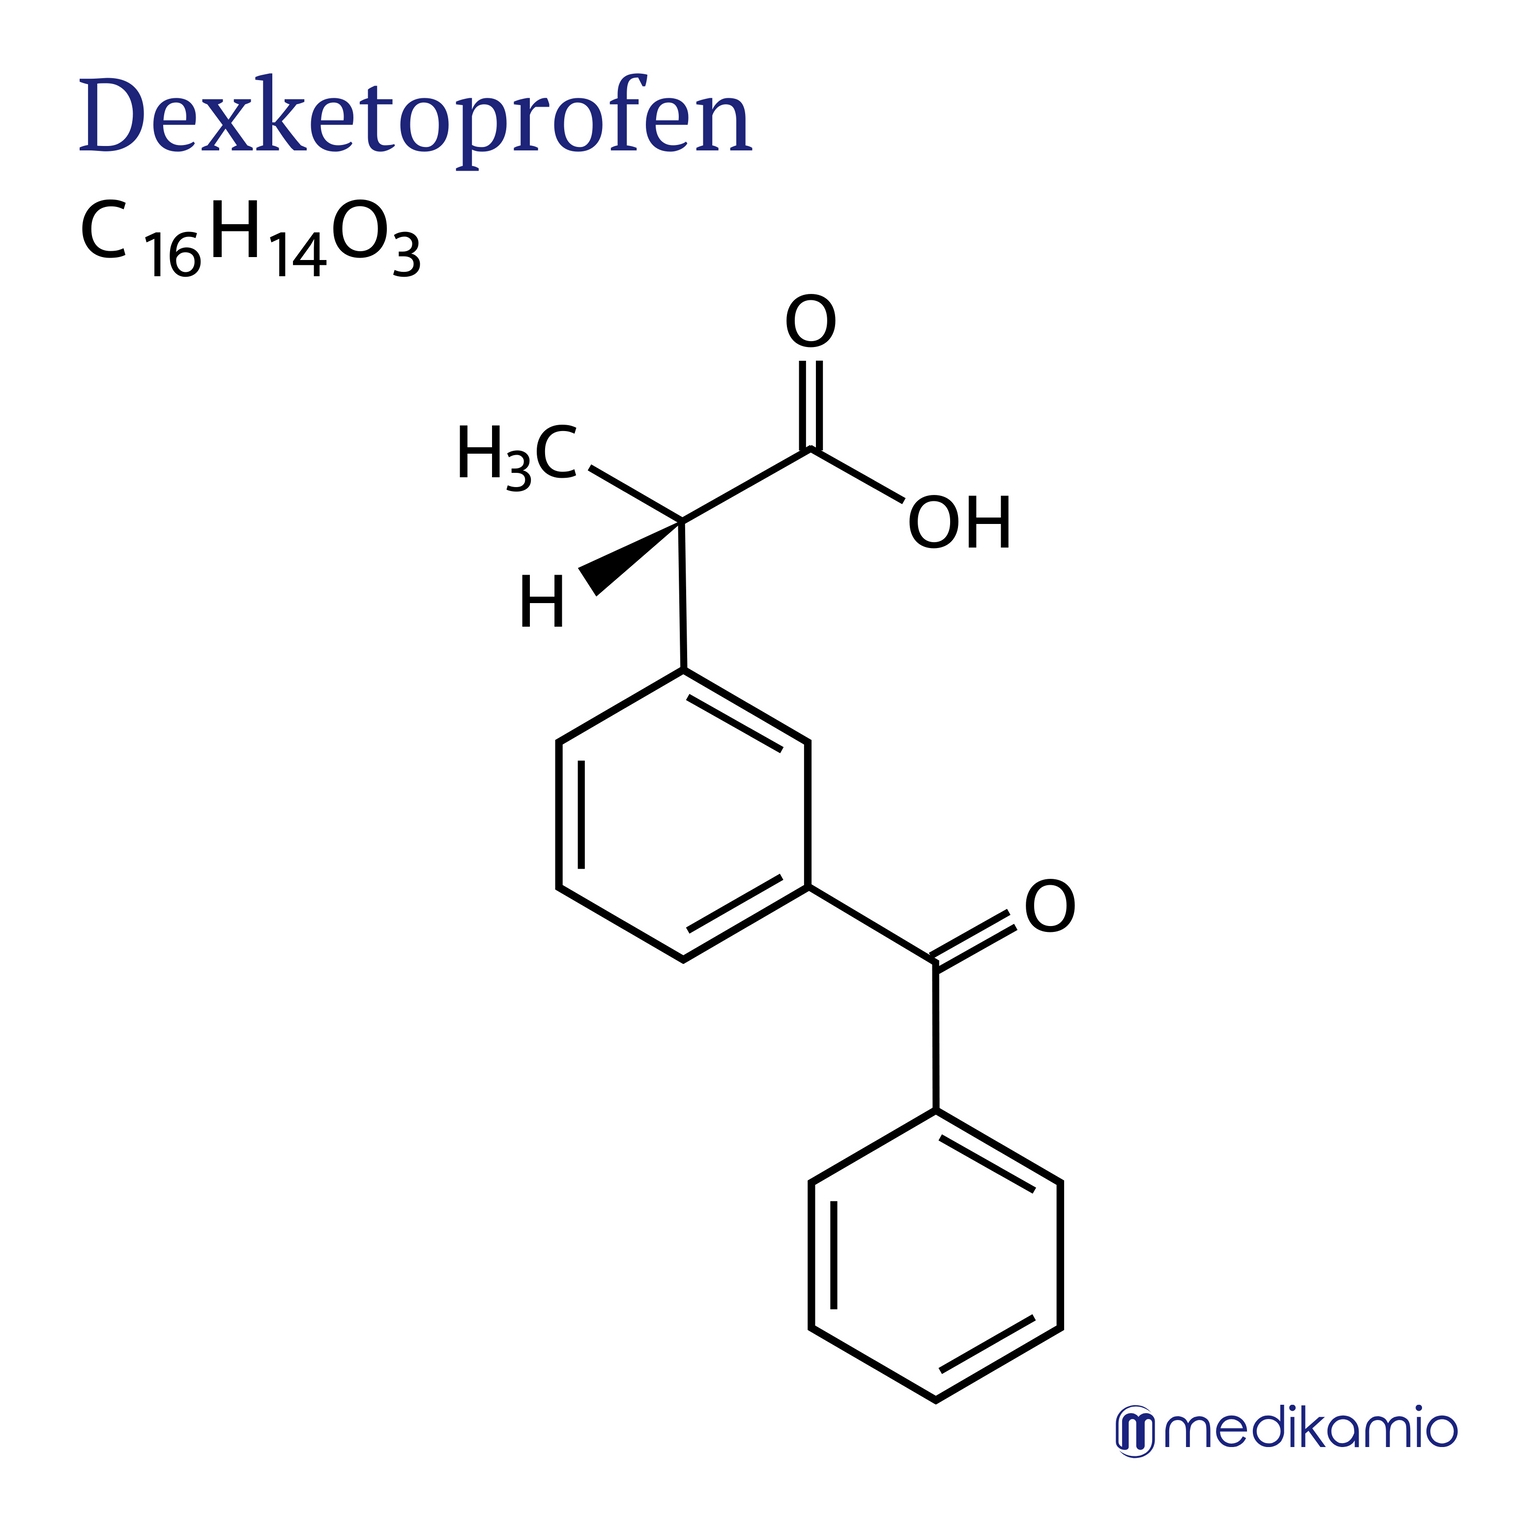 Fórmula estructural gráfica de la sustancia activa dexketoprofeno